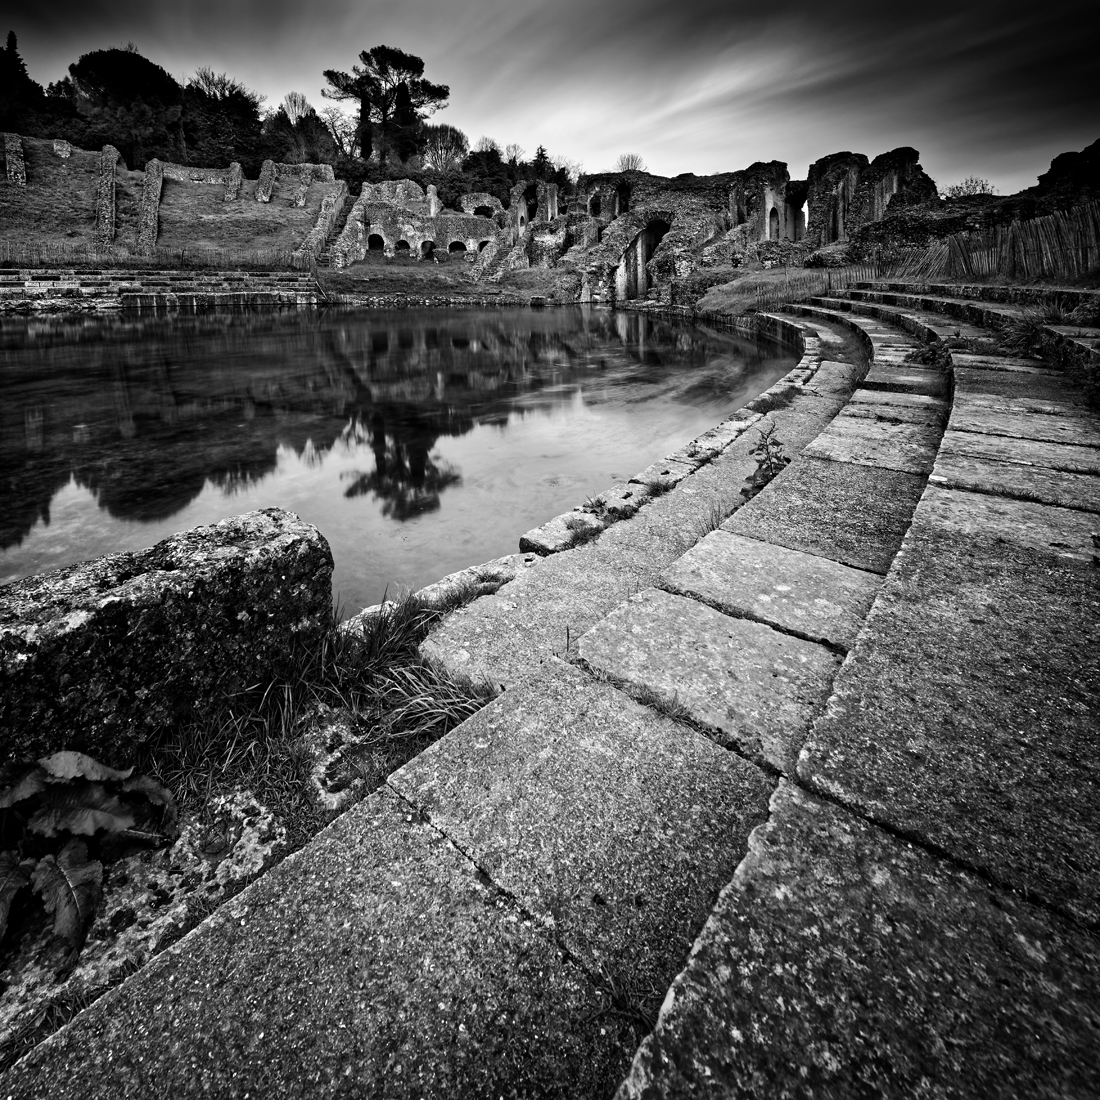 flood in the Roman amphitheater